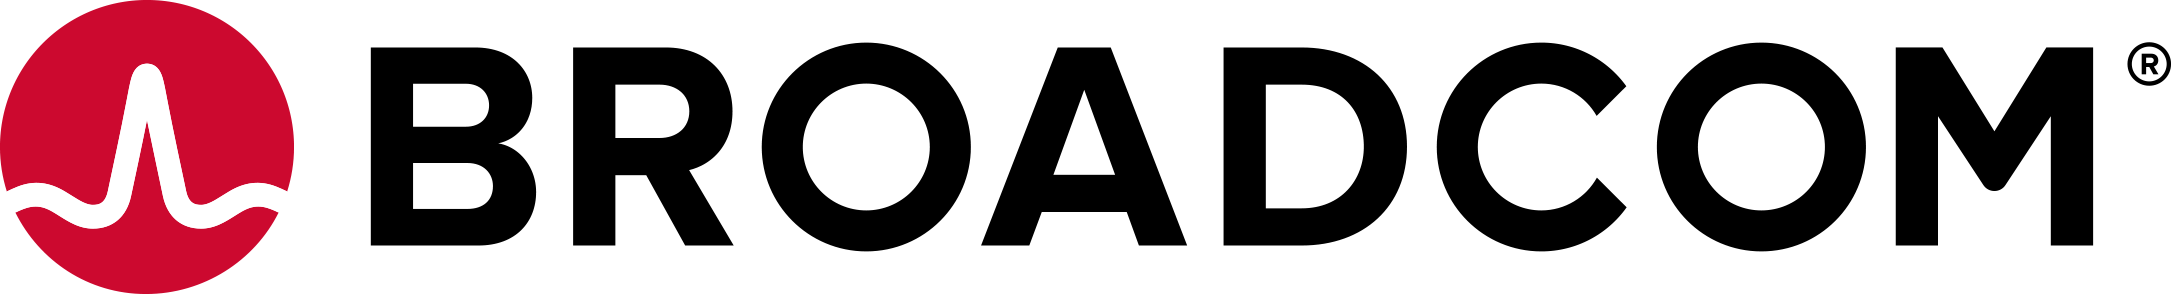 broadcom 2019 logo